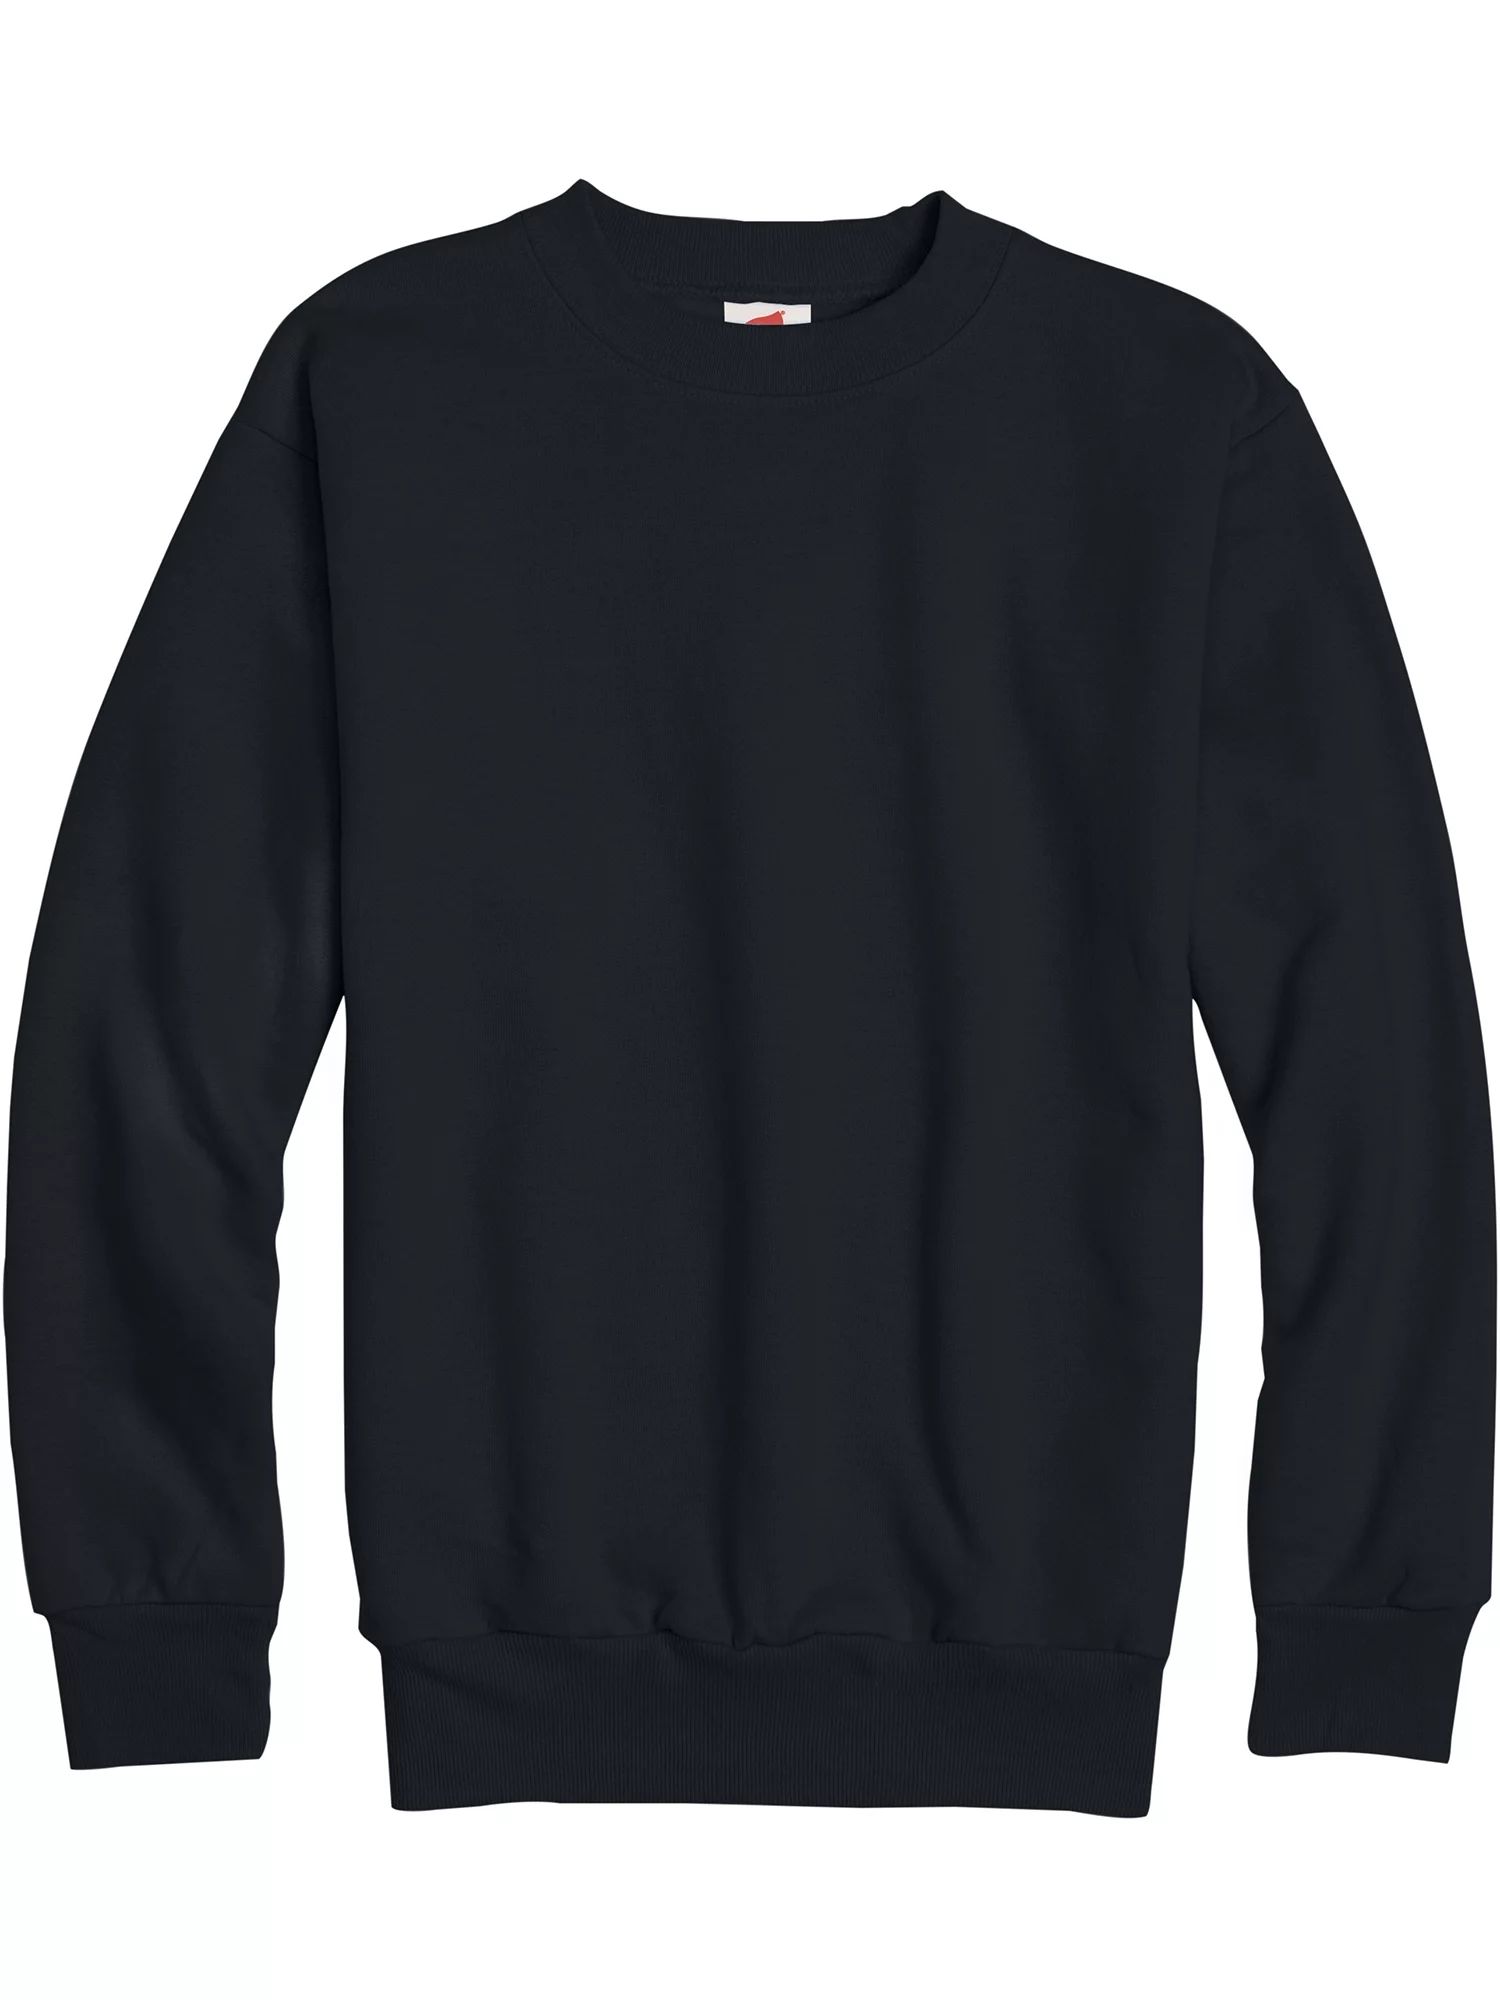 Hanes Boys Fleece Crew Neck Sweatshirt, Sizes 4-18 | Walmart (US)